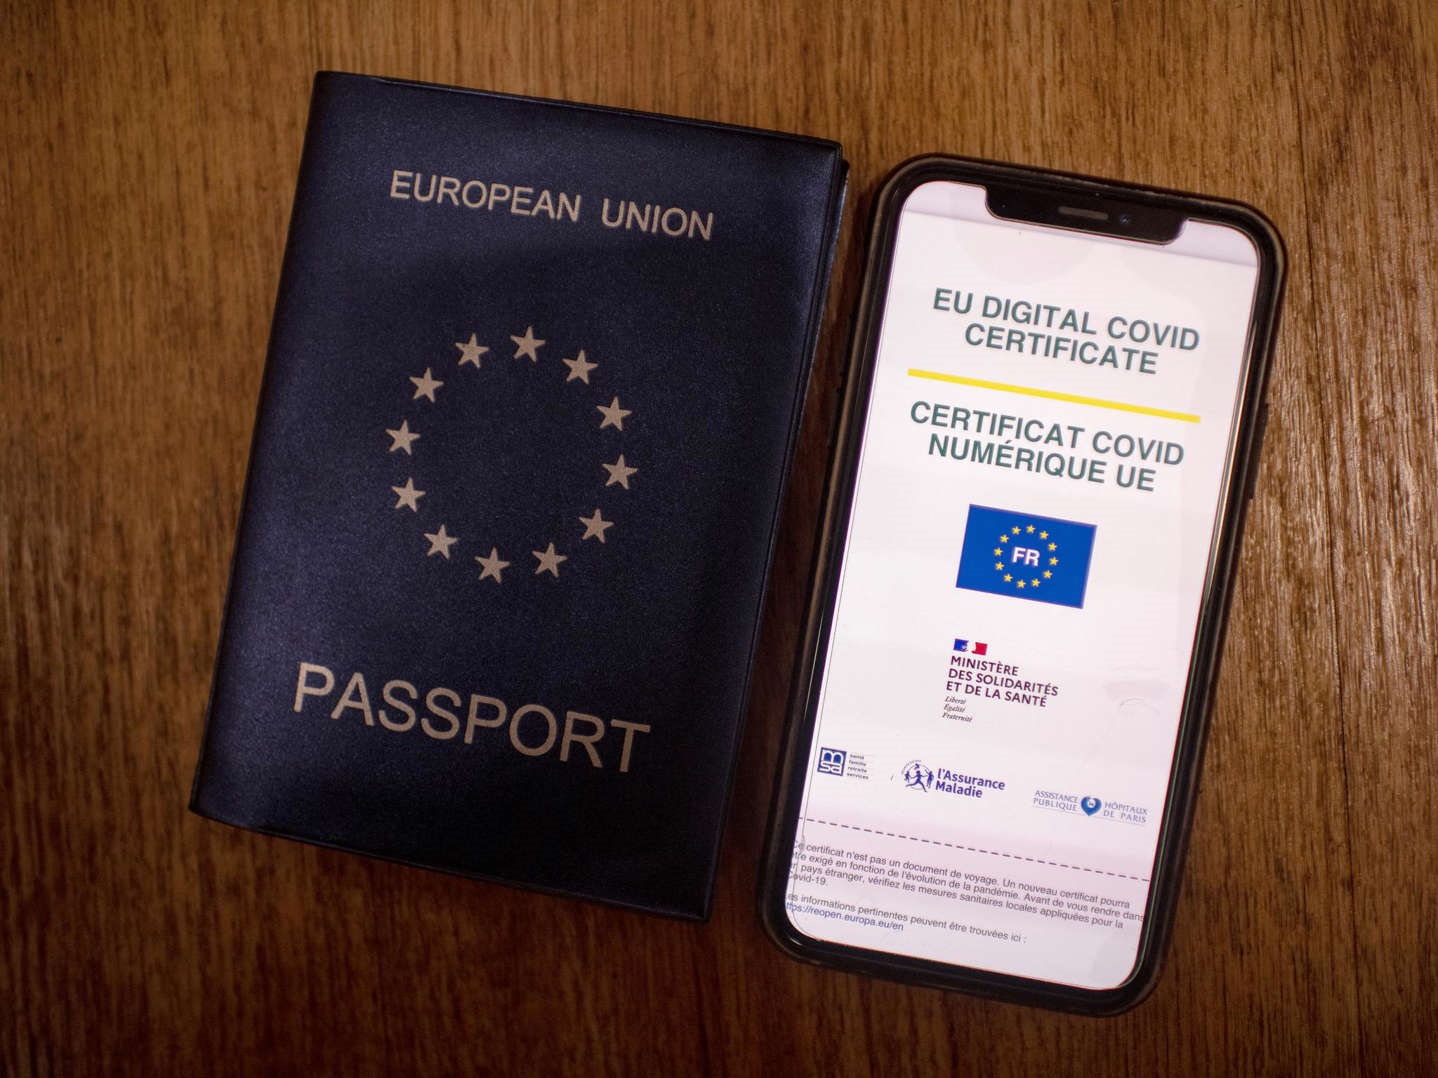 يتم تعديل تذكرة السفر الأوروبية بعد قواعد كورونا الجديدة في دول الاتحاد الأوروبي